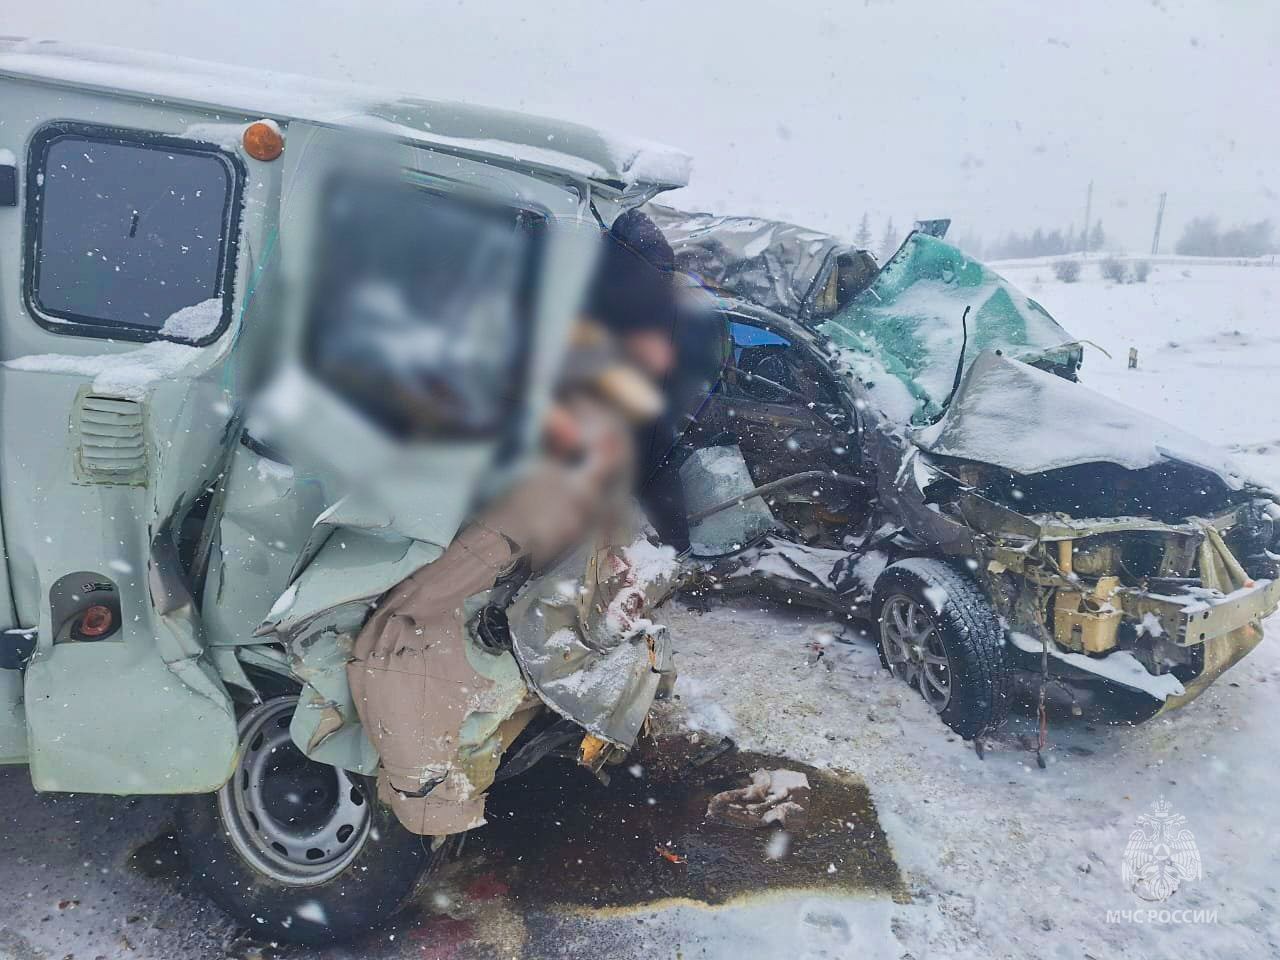 Подробности смертельного ДТП в Хангаласском районе рассказали в ГИБДД по Якутии